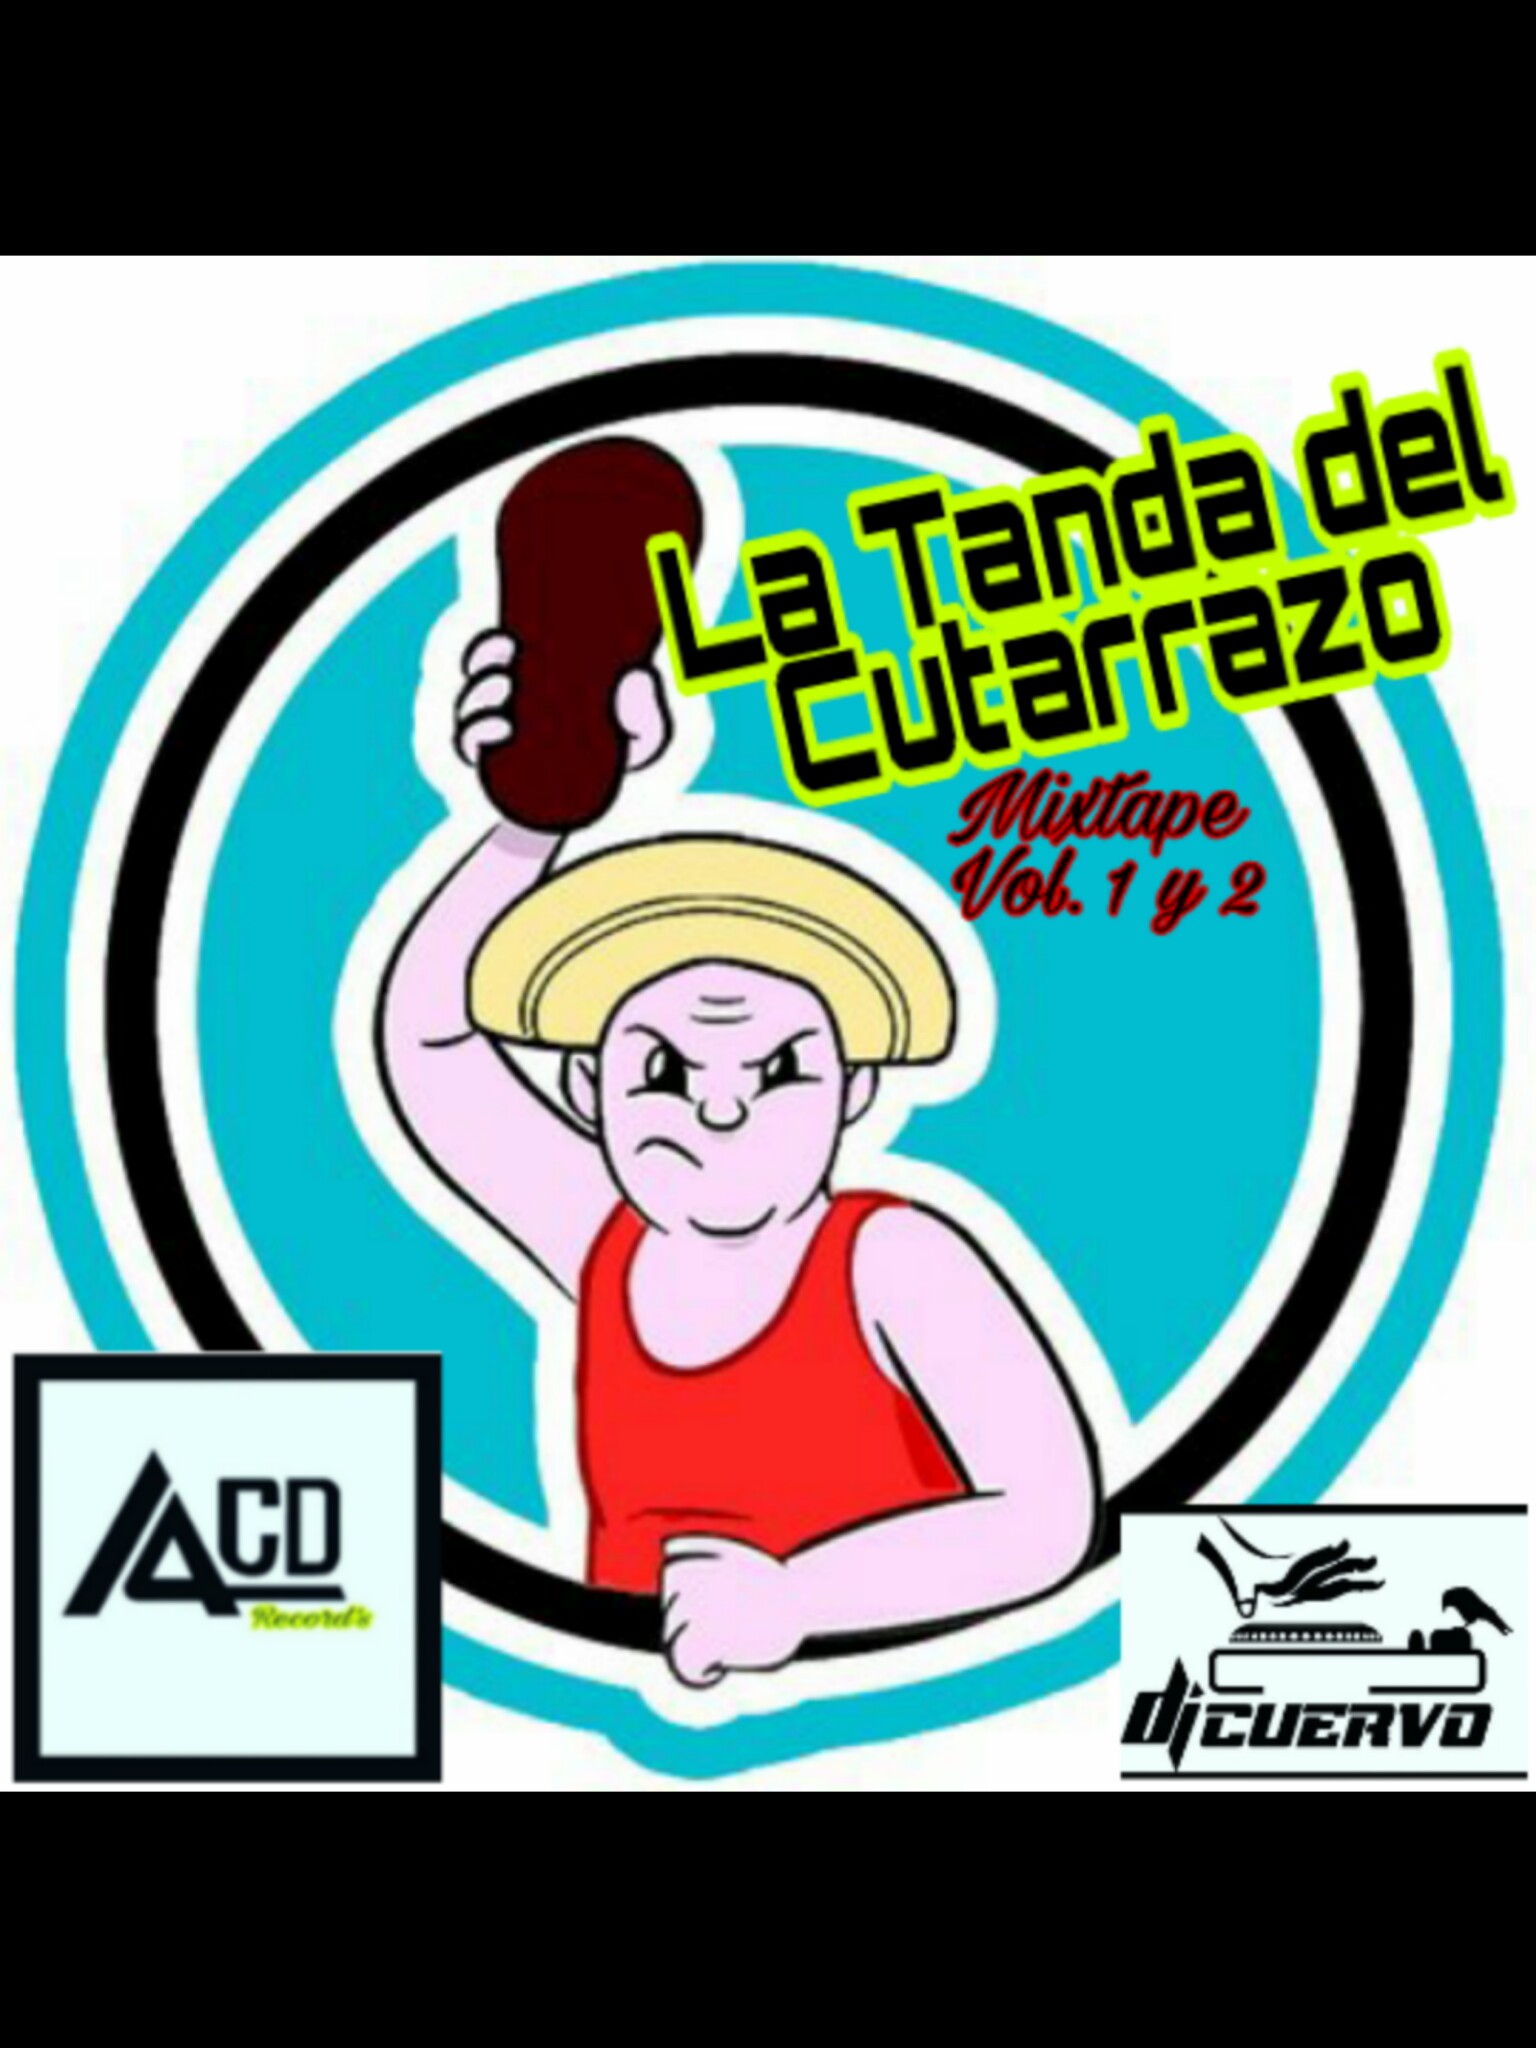 LA TANDA DEL CUTARRAZO MIXTAPE VOL 1- DJ CUERVO